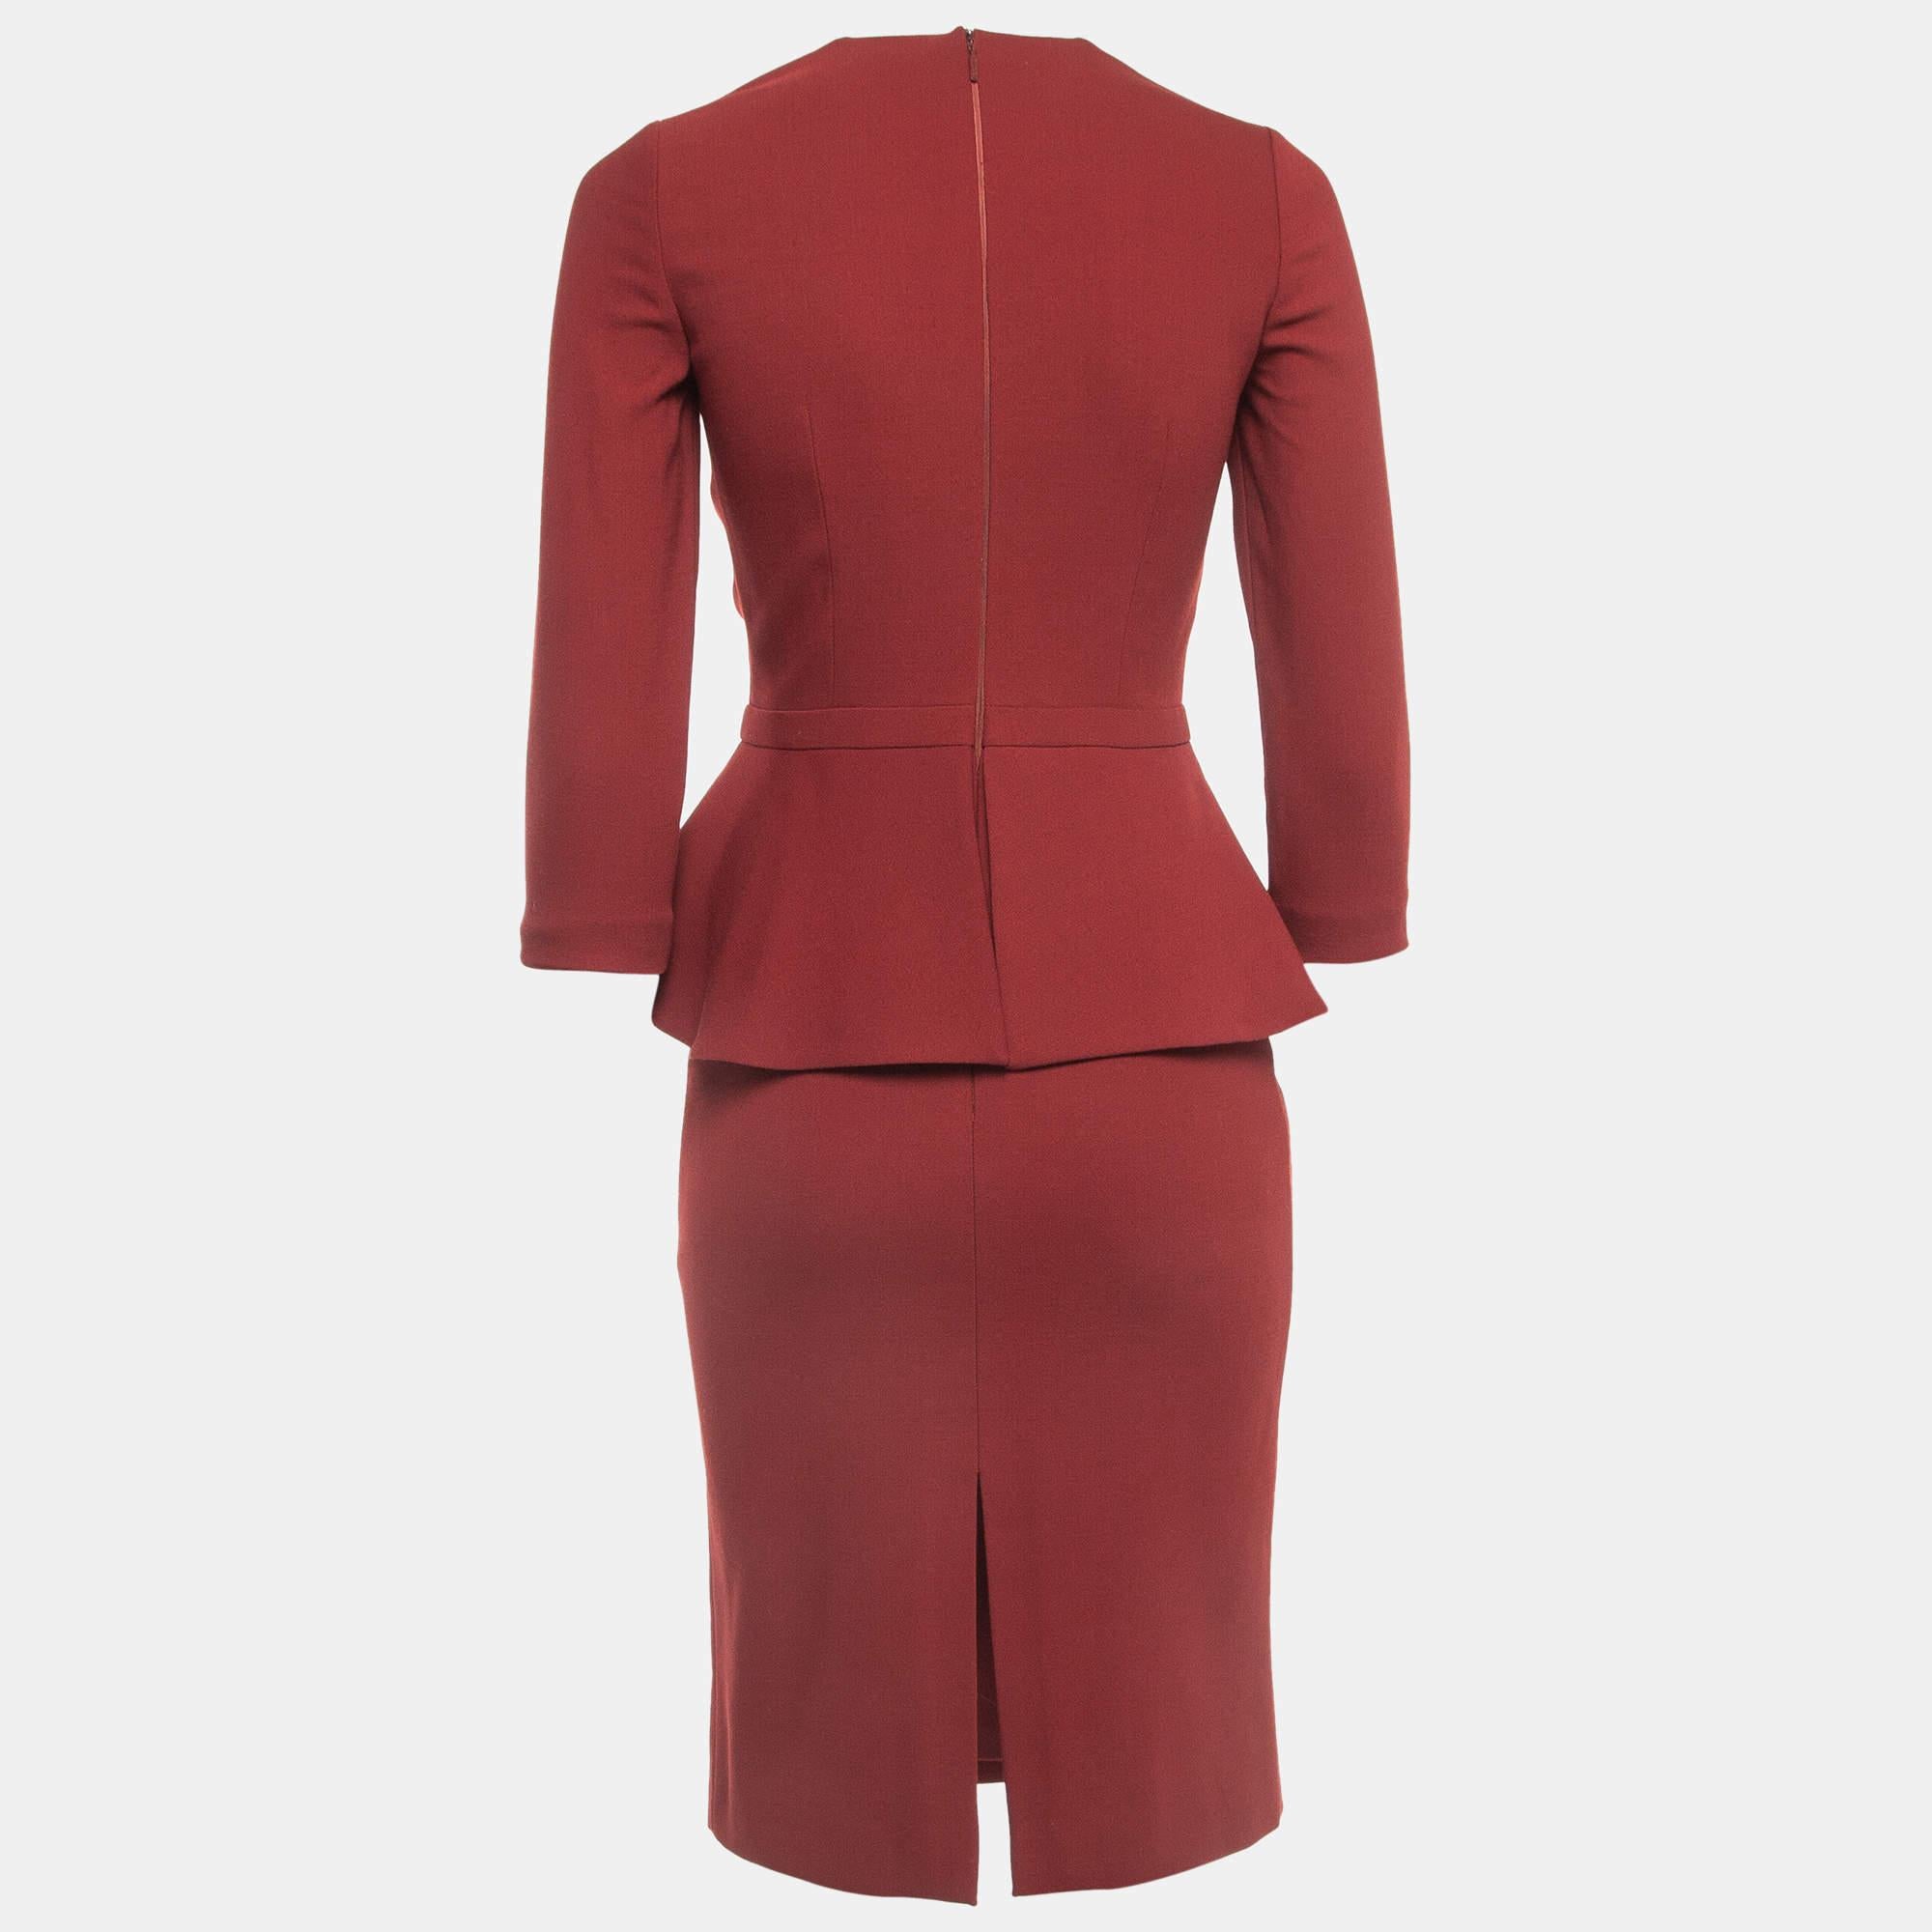 Dieses rote Midikleid von Gucci ist mühelos in ein schickes Design verwandelt und lässt sich leicht tragen und mit vielen Accessoires ausstatten. Das Kleid ist wunderschön geschnitten und wird sicher Saison für Saison ein Lieblingsstück bleiben.

